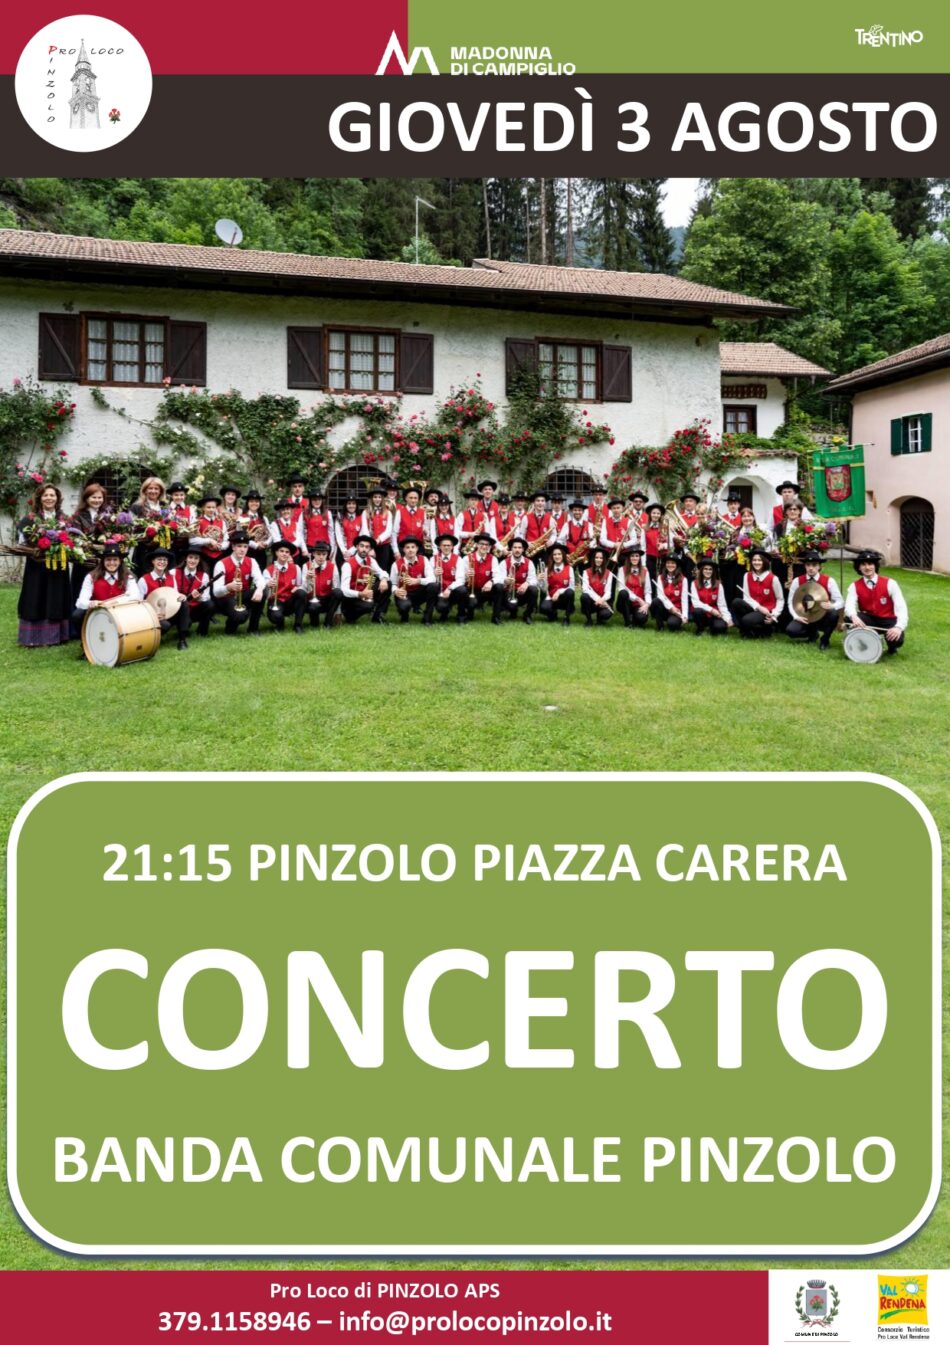 L’Estate è Pinzolo: Giovedì 3 agosto ore 21.15 – CONCERTO della Banda comunale di Pinzolo in piazza Carera